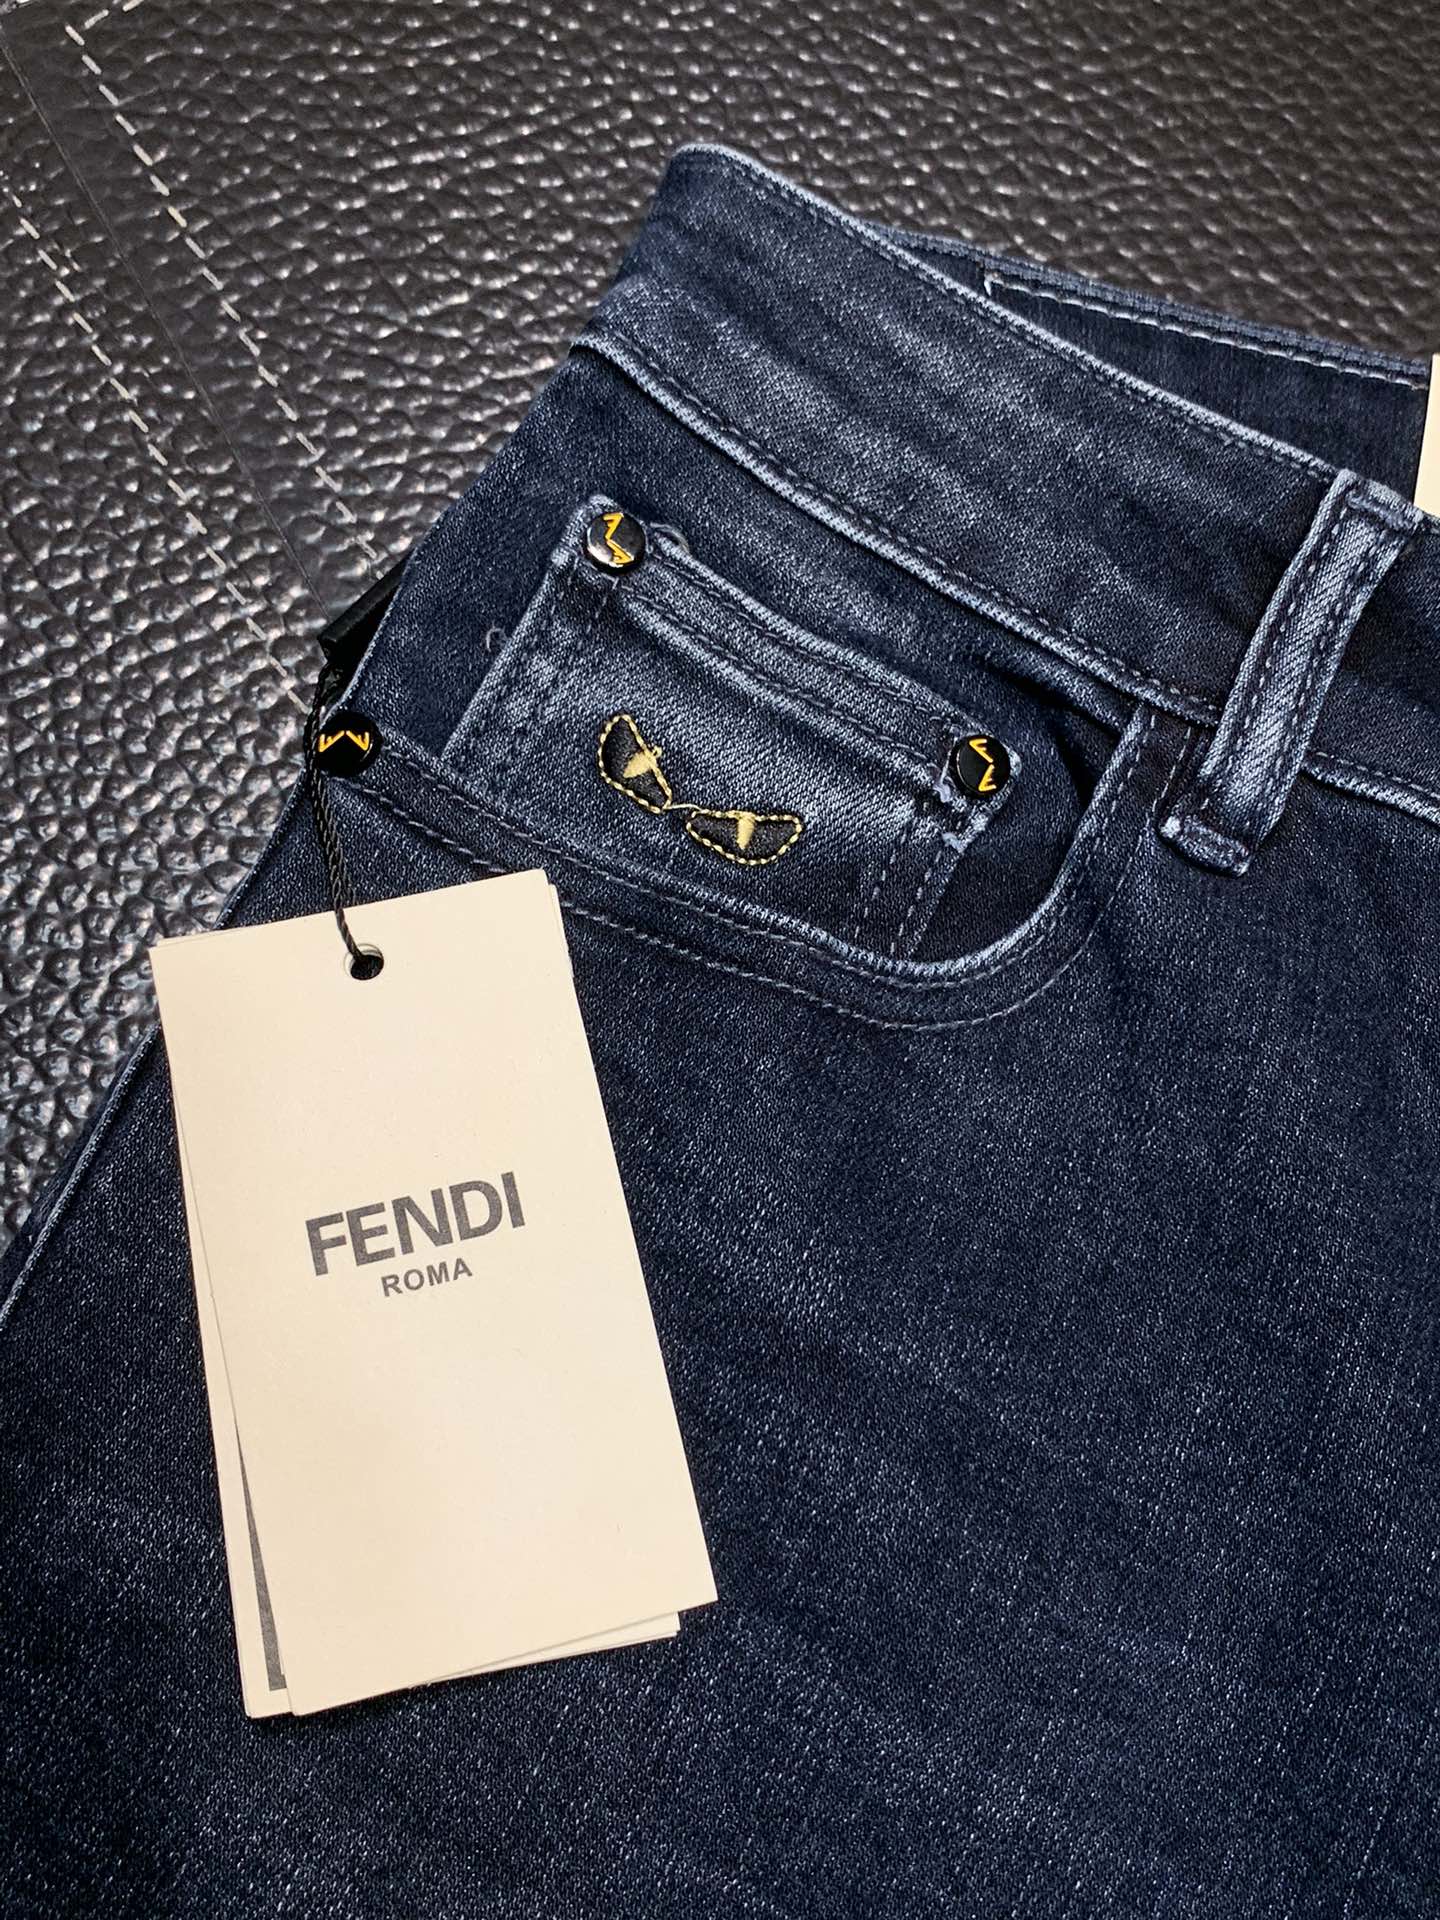 FENDI芬迪独家专供新款休闲牛仔裤高端版本专柜定制面料透气舒适度高细节无可挑剔品牌元素设计理念体现高品